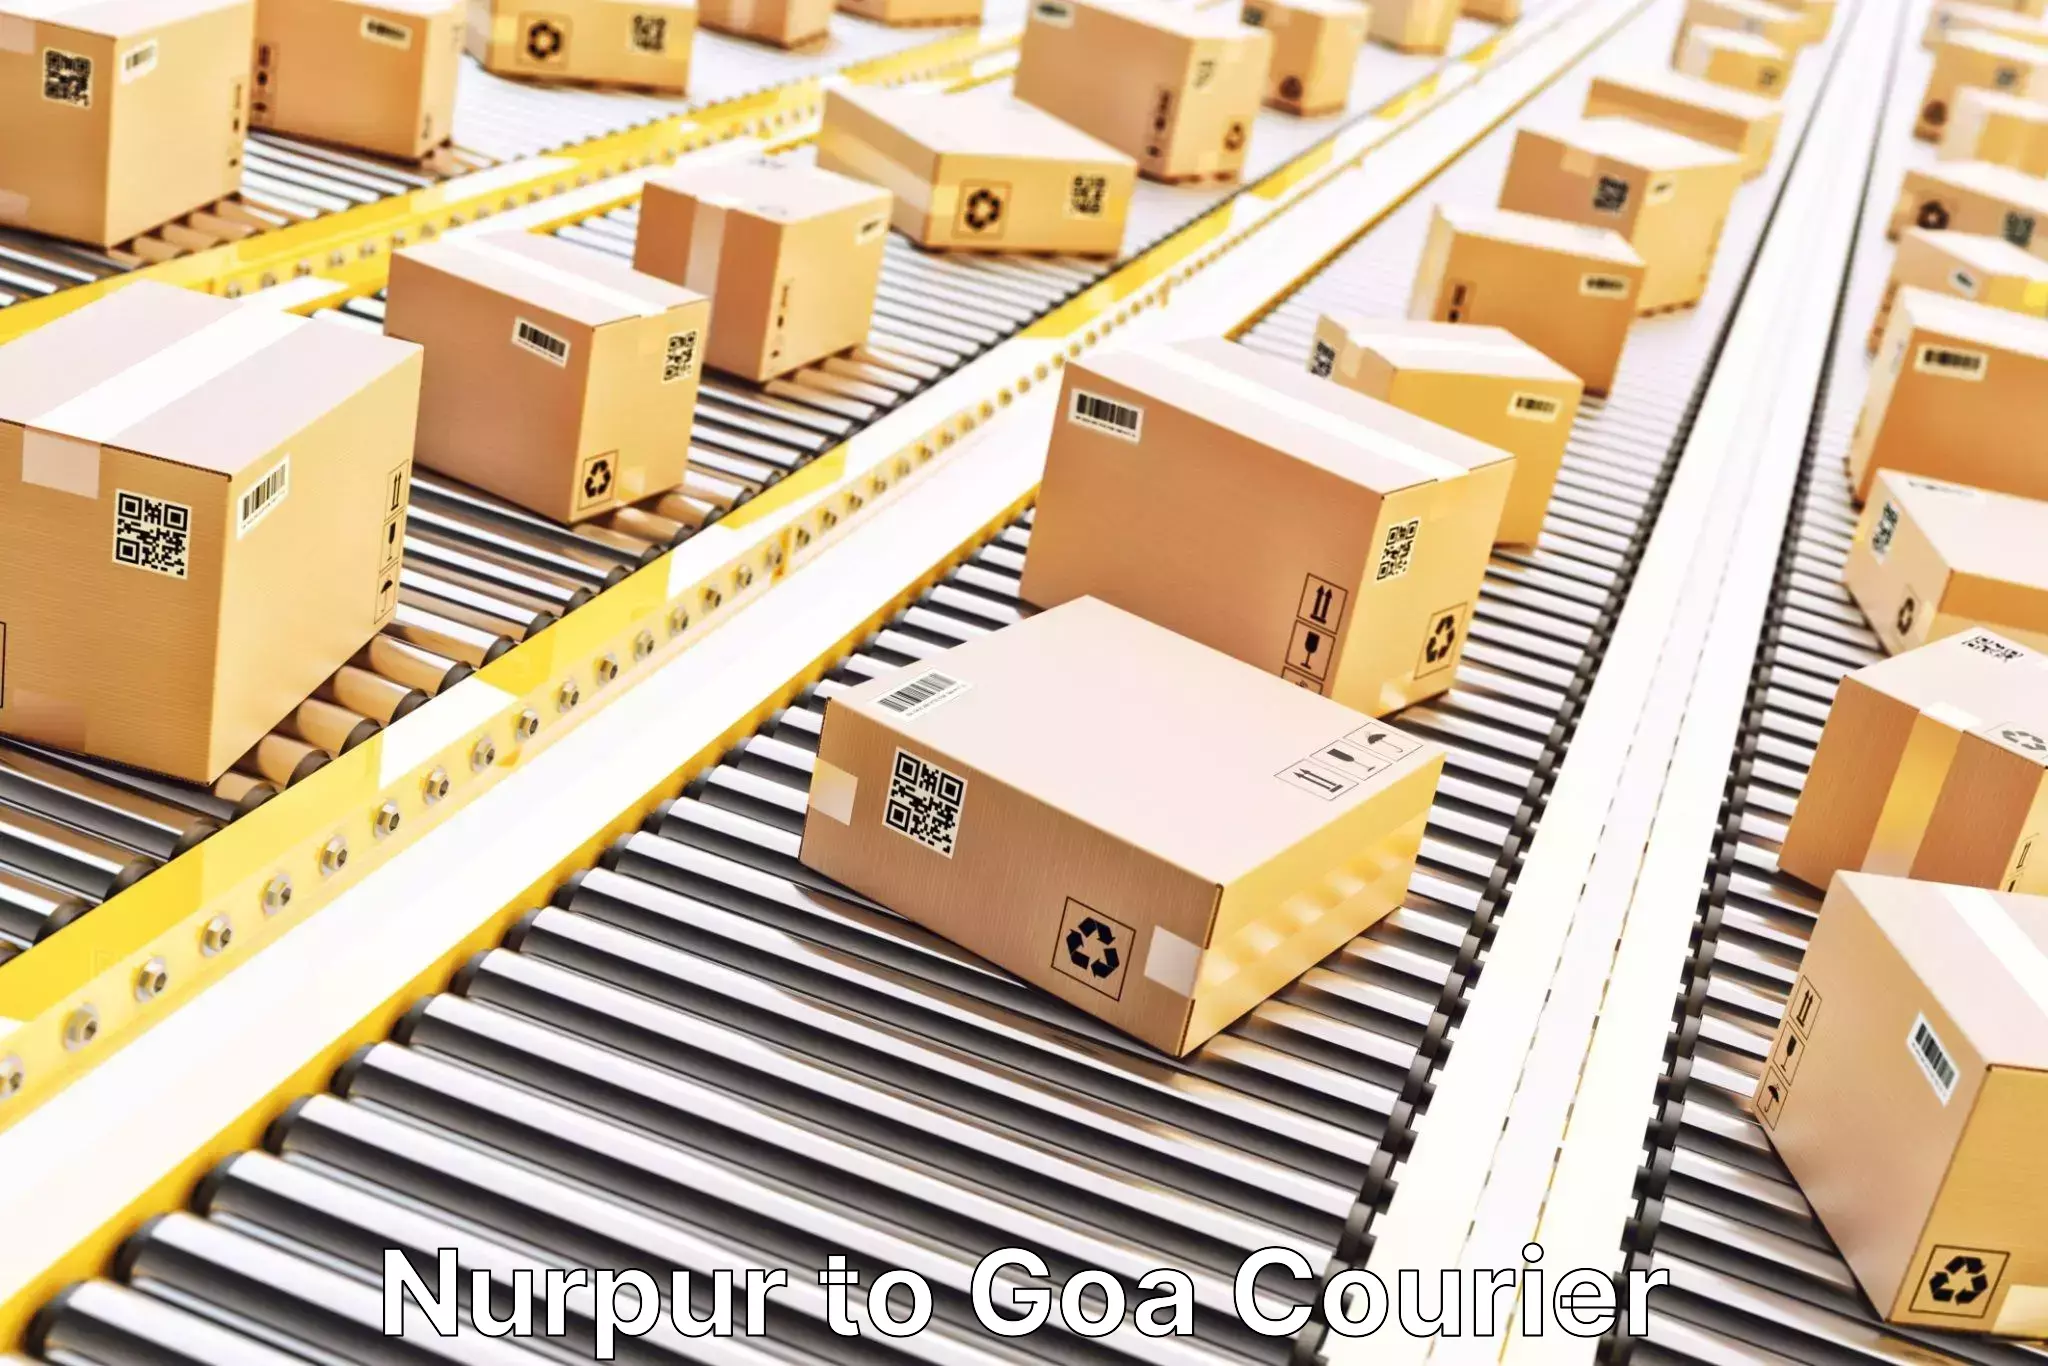 E-commerce fulfillment Nurpur to Sanvordem